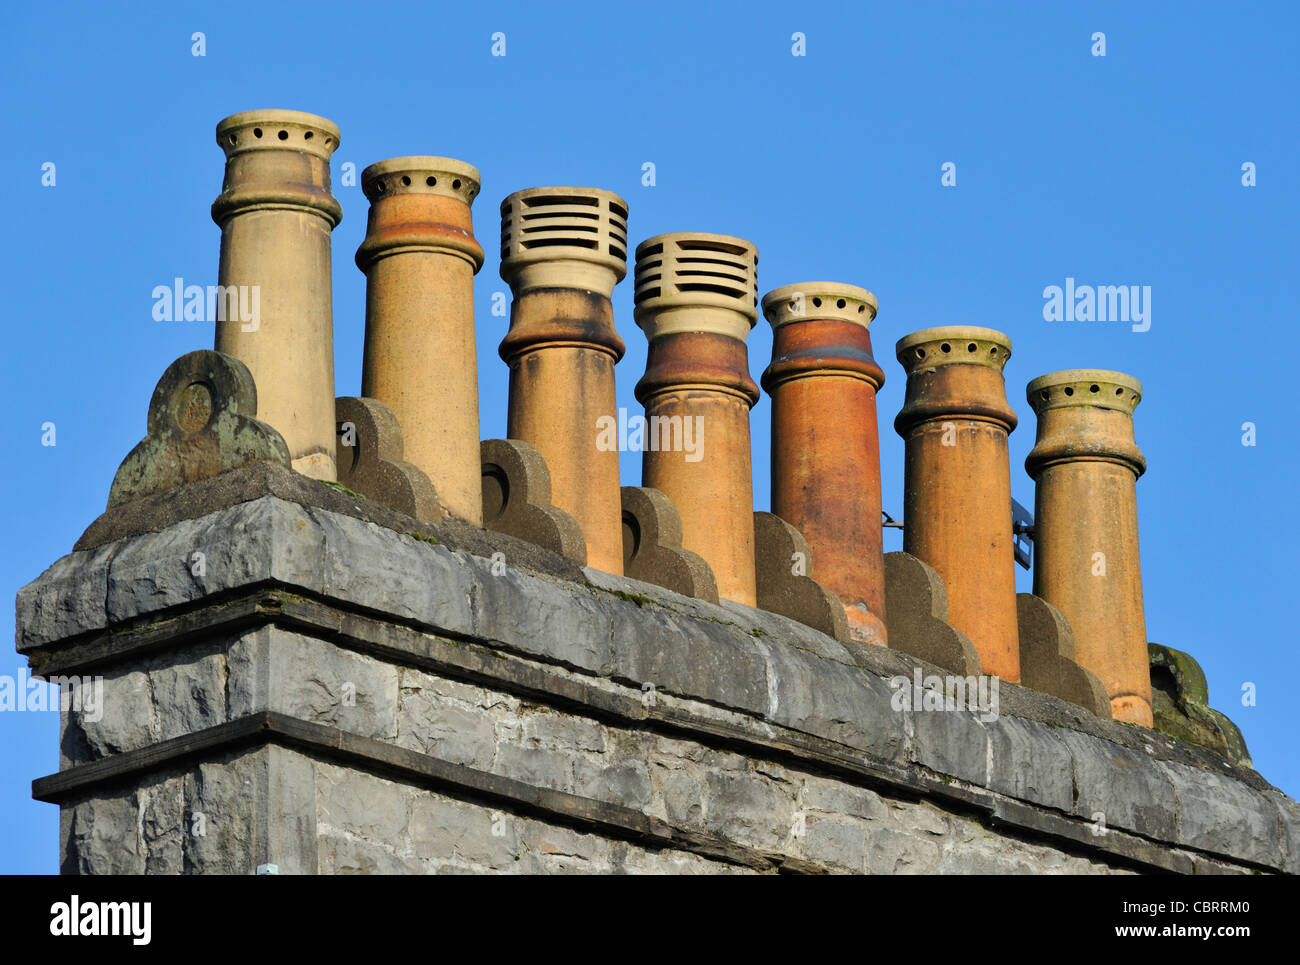 Pila de la chimenea con siete ollas y ornamentación en piedra. Aynam Road, en Kendal, Cumbria, Inglaterra, Reino Unido, Europa. Foto de stock